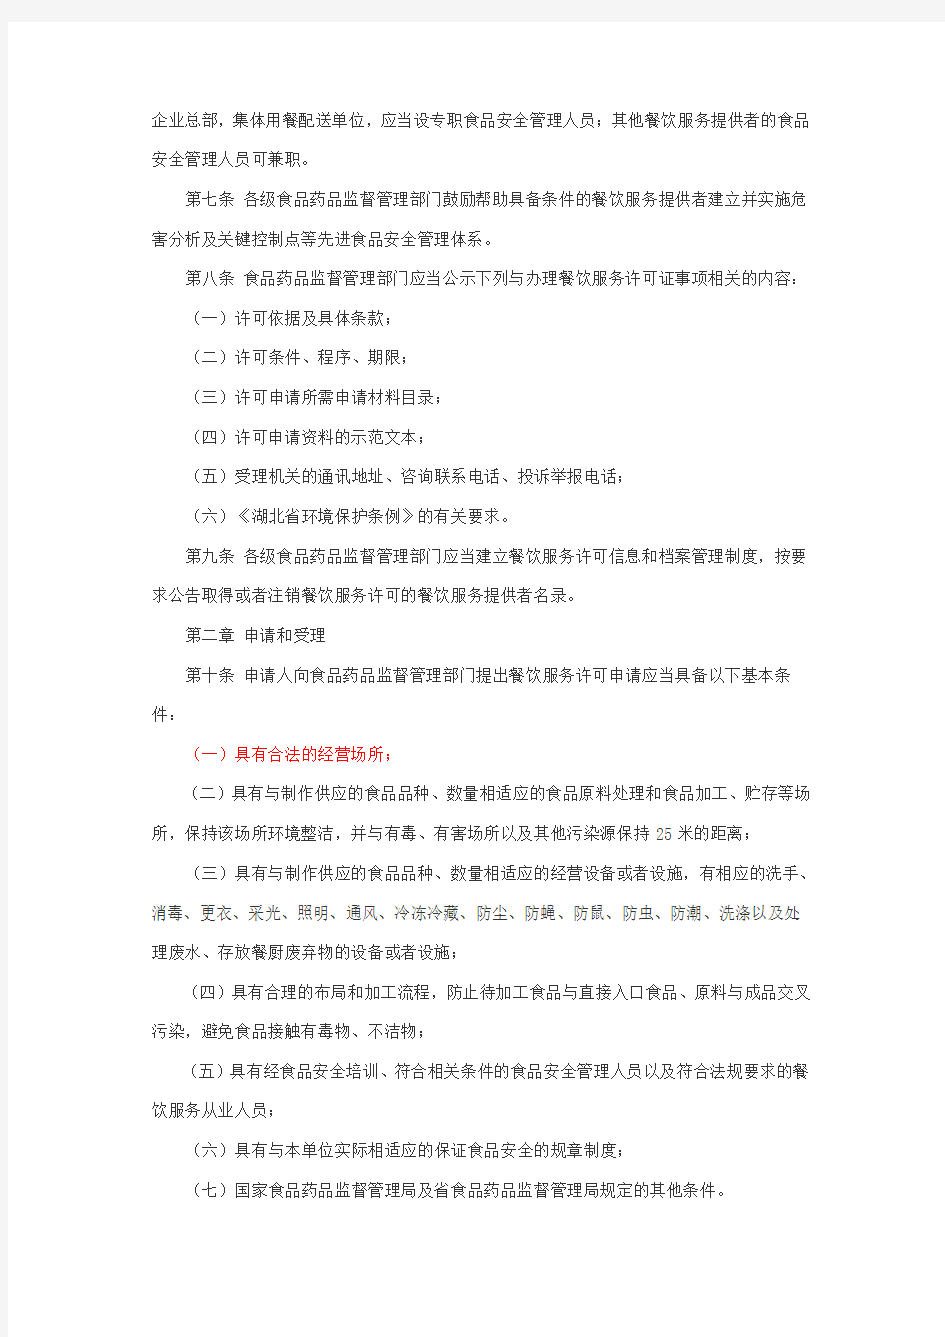 湖北省餐饮服务许可管理实施细则(试行)(鄂食药监文〔2012〕70号)